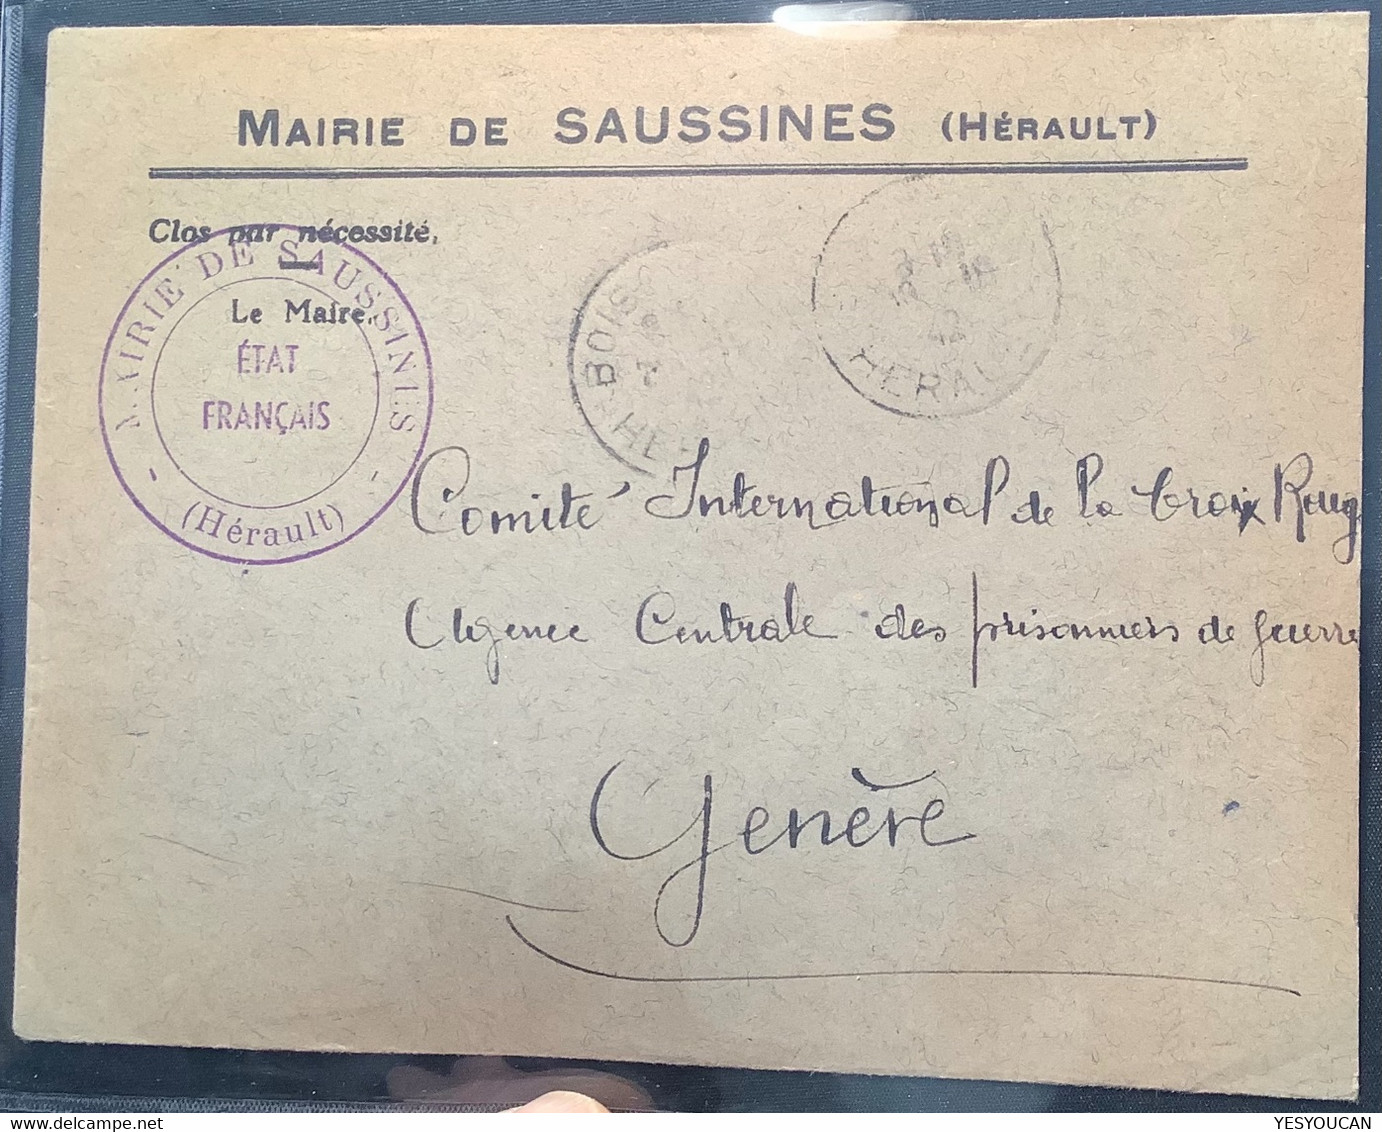 ÉTAT FRANÇAIS MAIRIE SAUSSINES HERAULT 1942 >CROIX ROUGE Genéve Suisse (France Red Cross War Cover Lettre Pow - 2. Weltkrieg 1939-1945